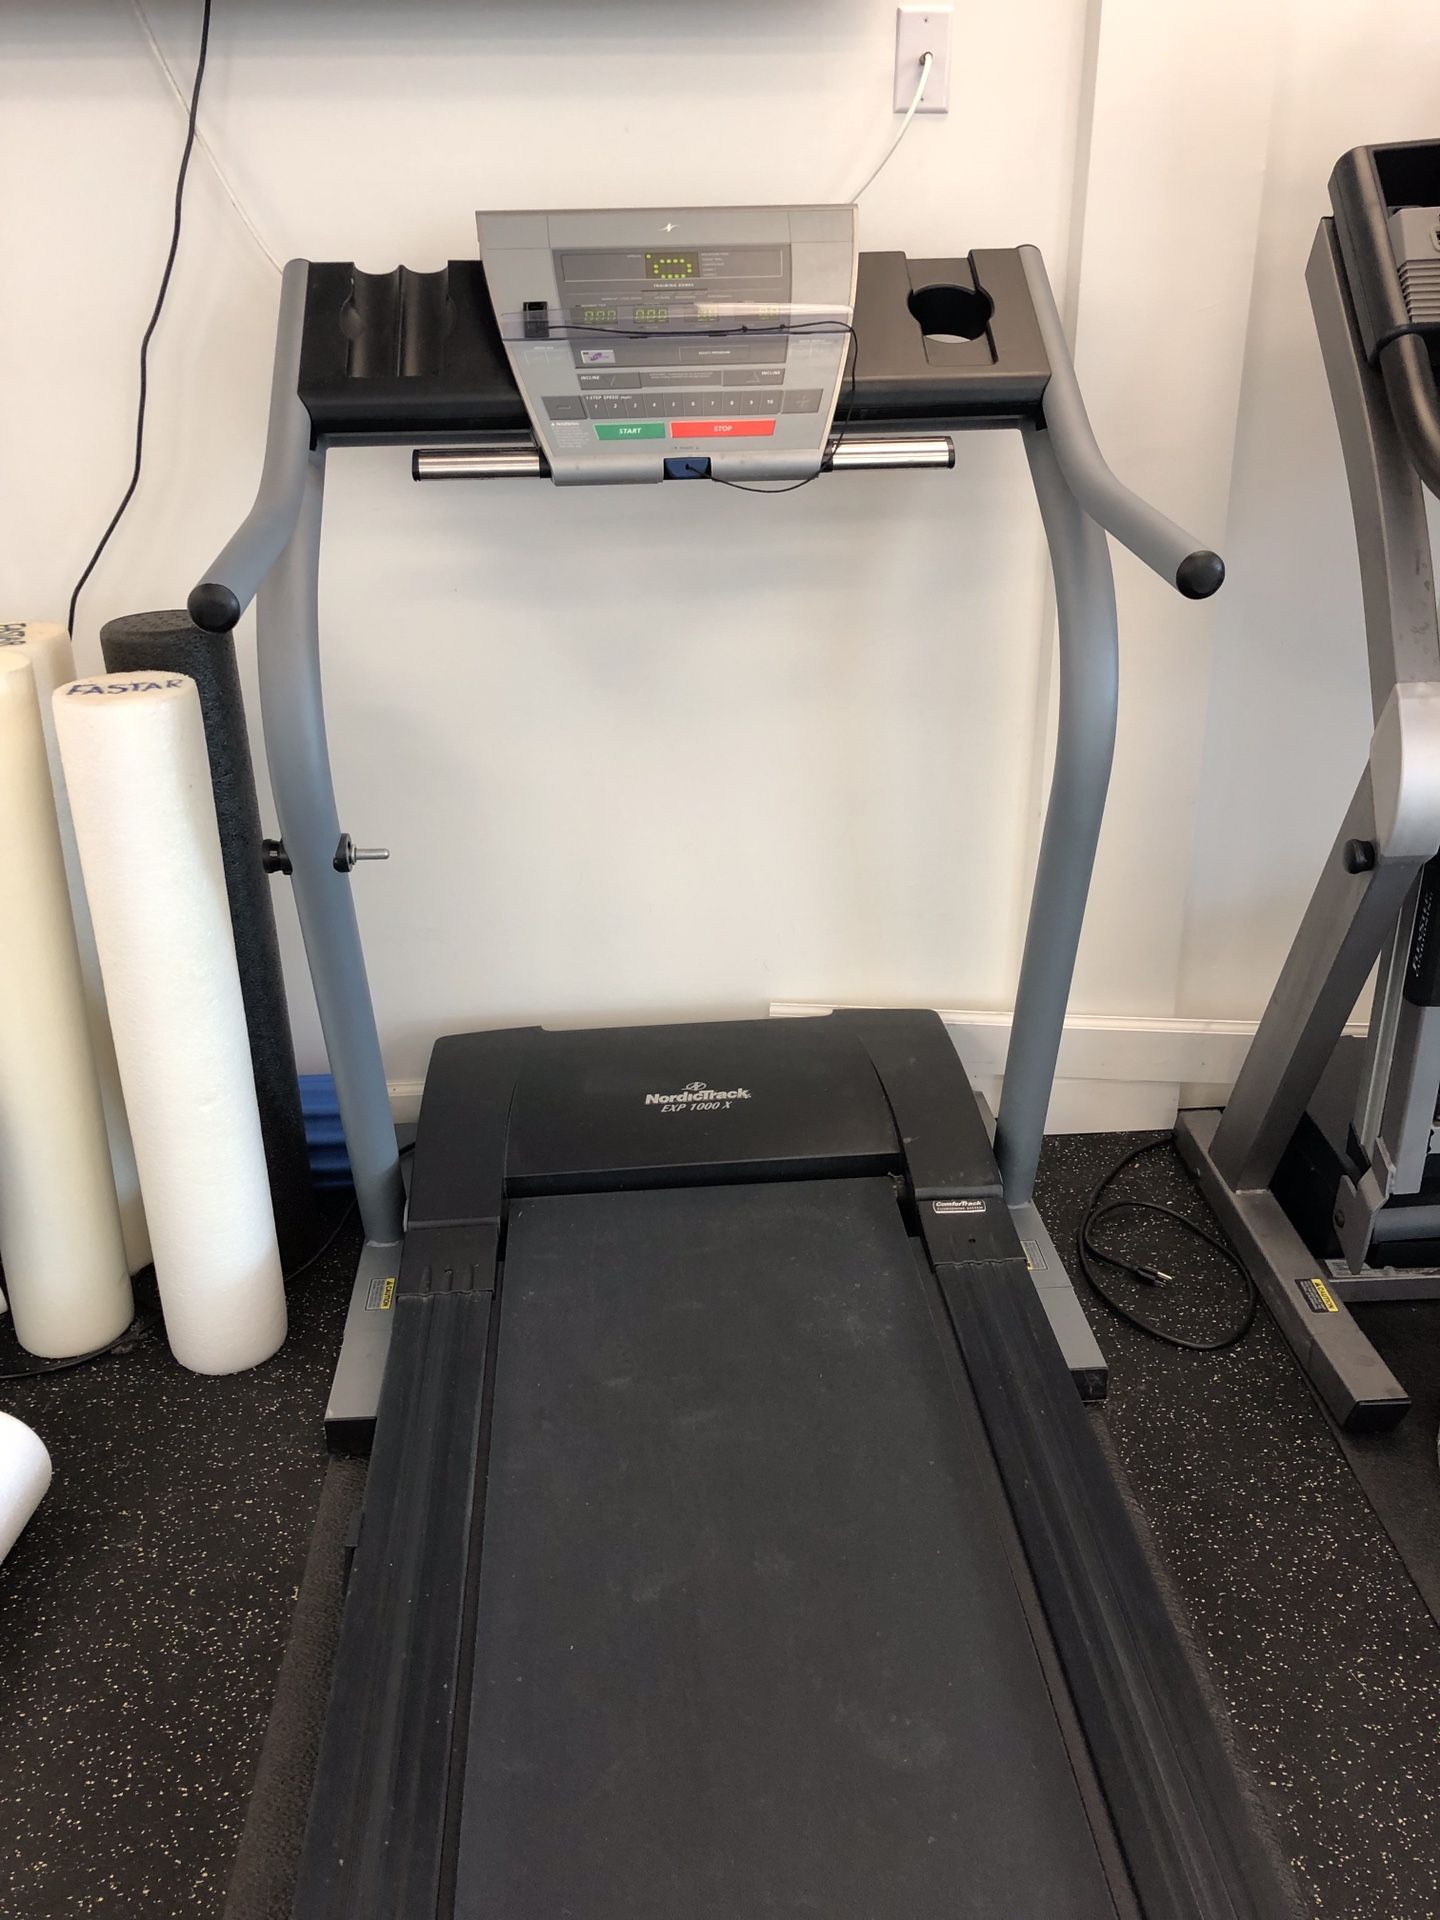 NordicTrack EXP 1000 X treadmill